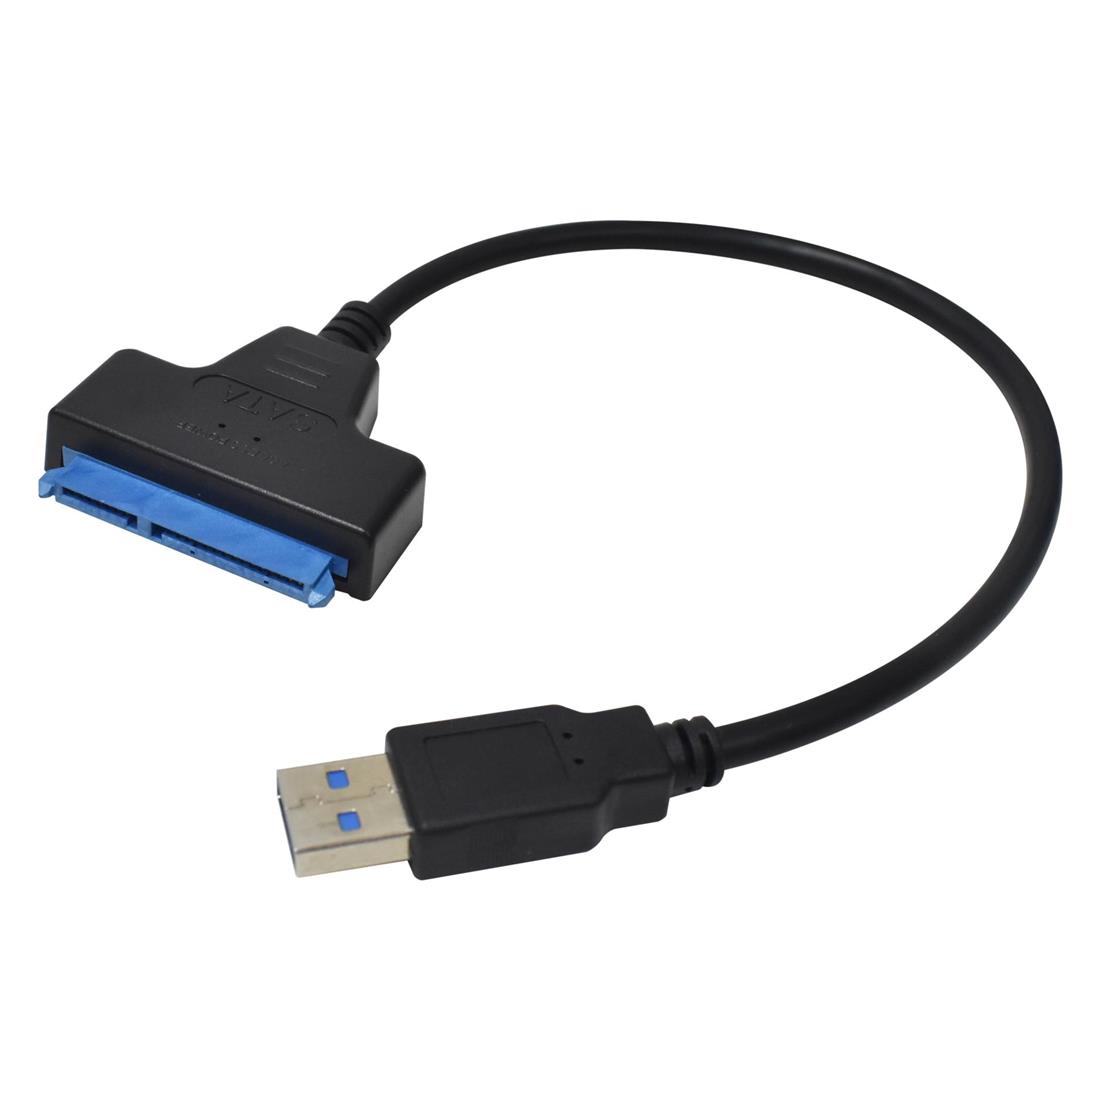 hacha consola George Bernard ADAPTADOR SATA 2.5 A USB 3.0